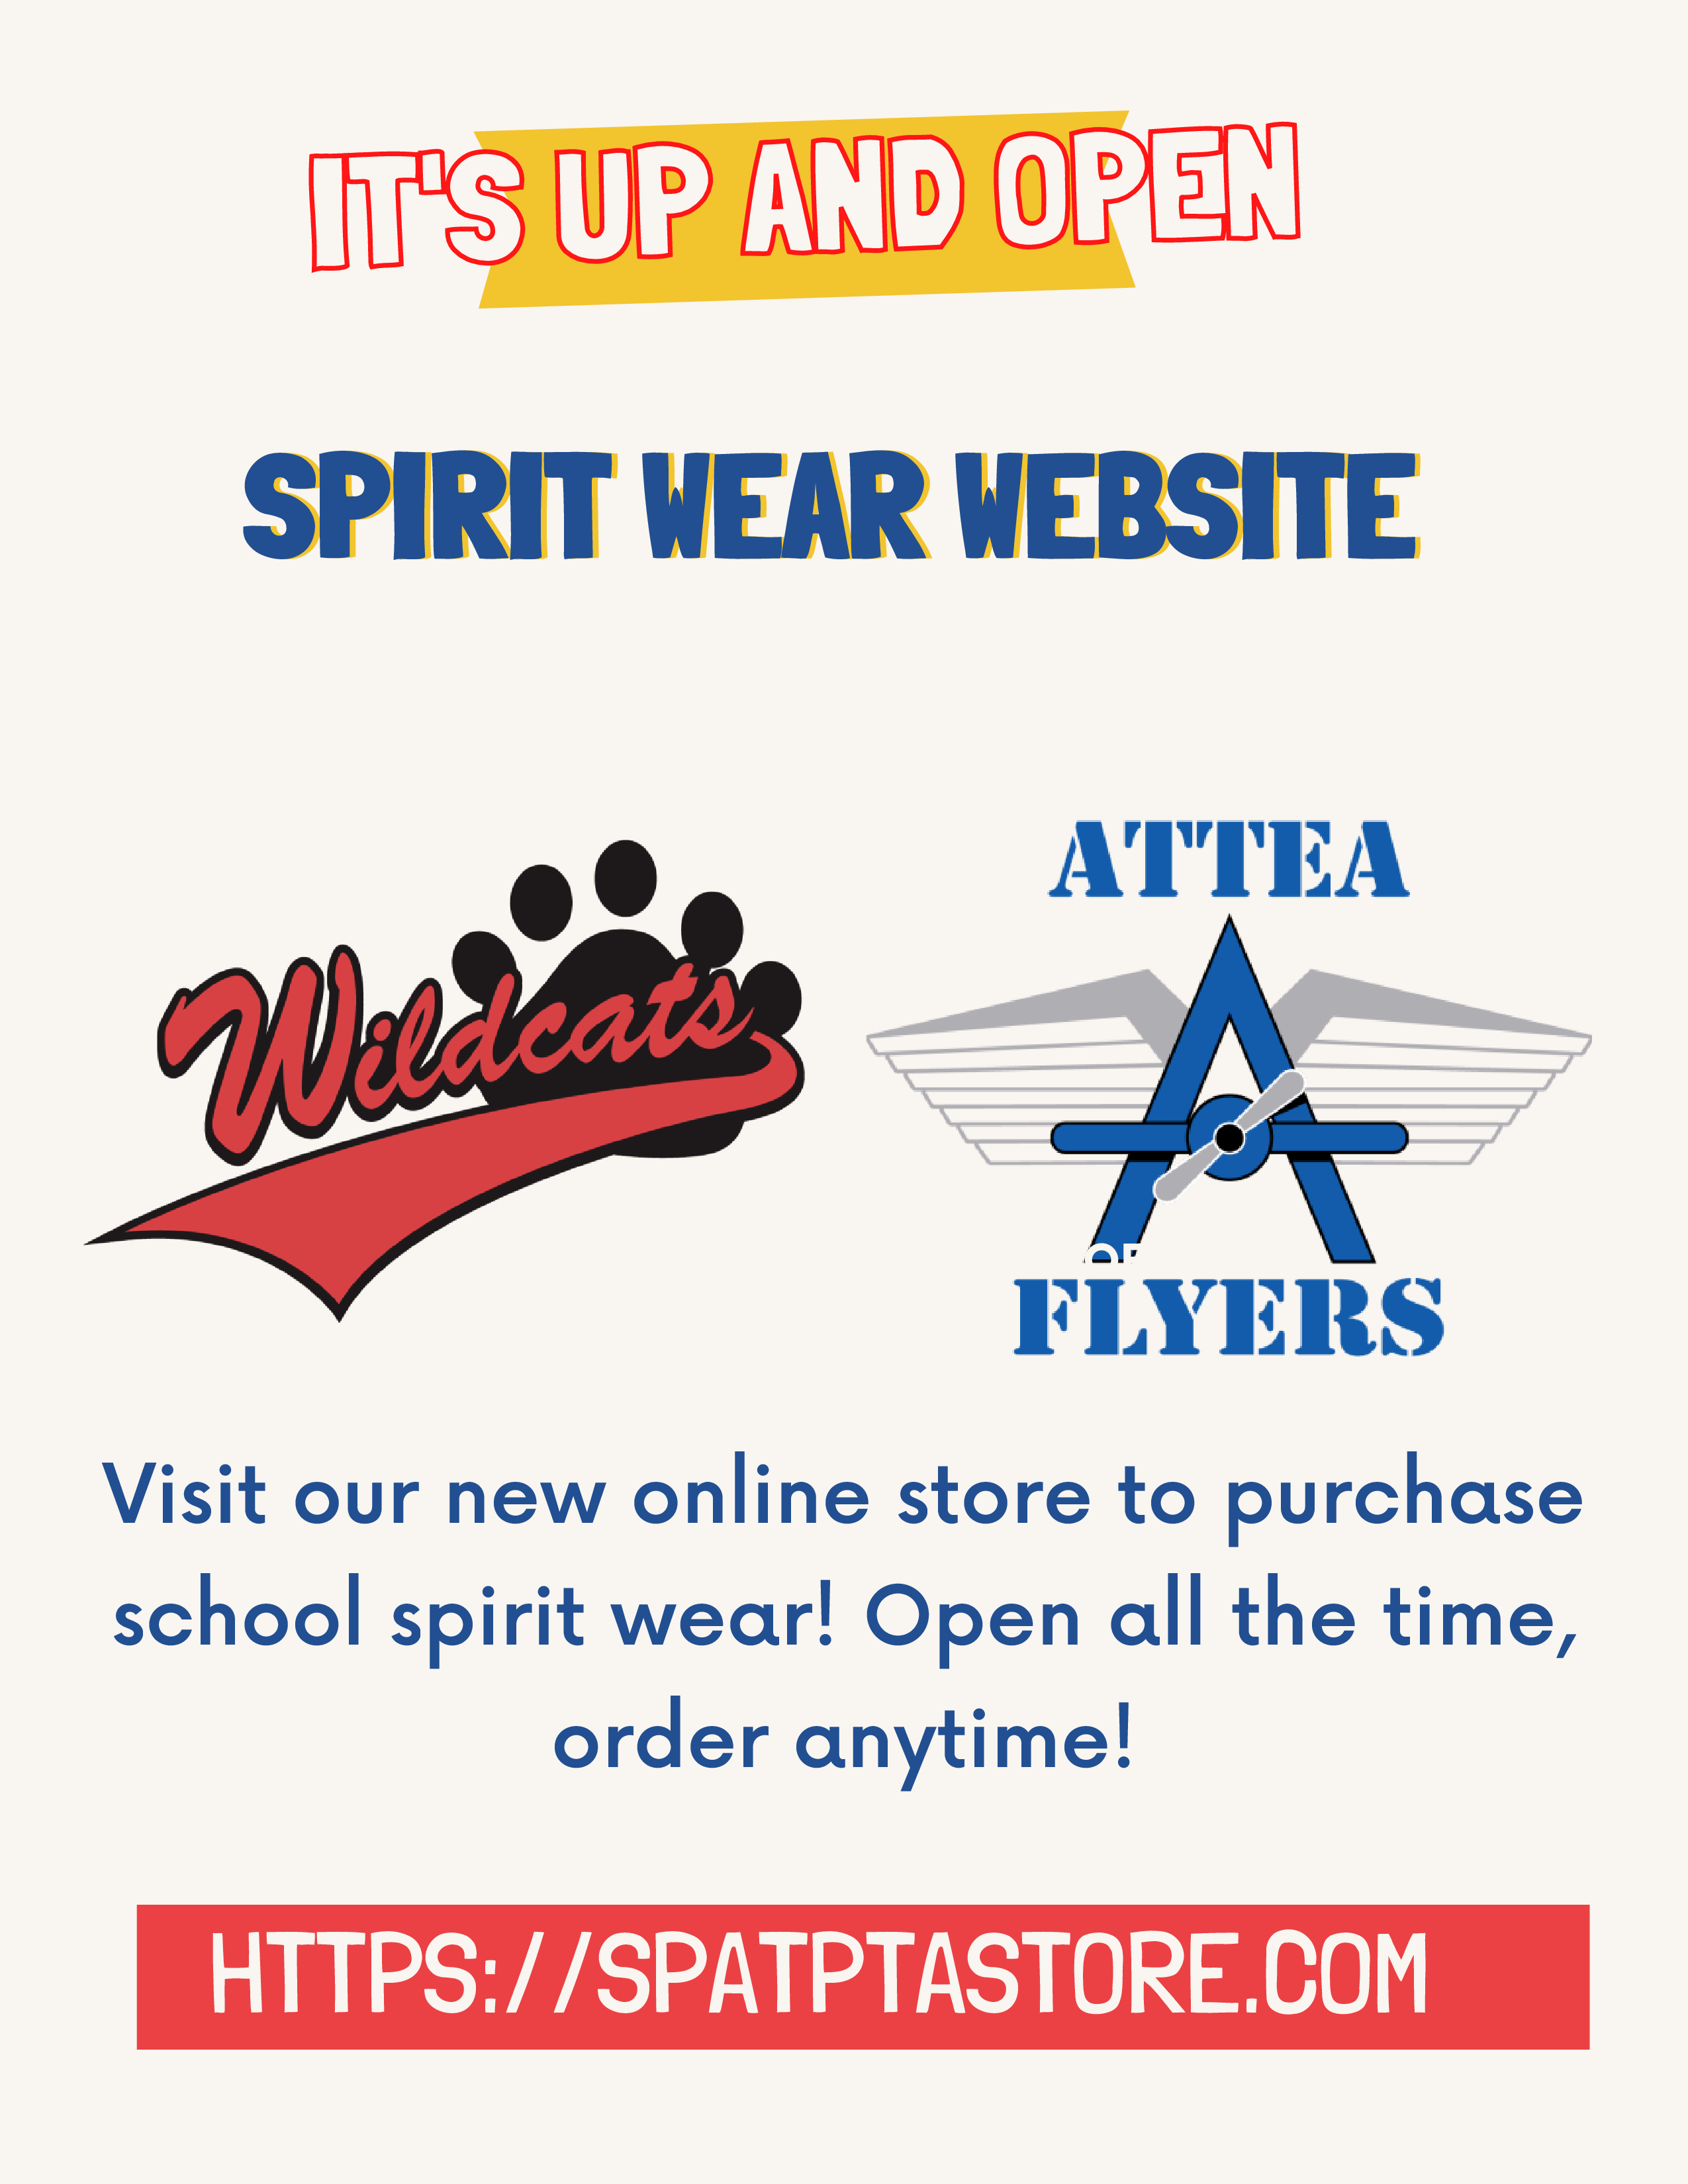 Энэ нь нээлттэй, нээлттэй байна! Spirit Wear вэб сайт (тэр үед Springman Wildcats лого болон Attea Flyers лого) Манай онлайн дэлгүүрээр зочилж сургуулийн сүнсний хувцас худалдаж аваарай! Үргэлж нээлттэй, хүссэн үедээ захиалаарай!